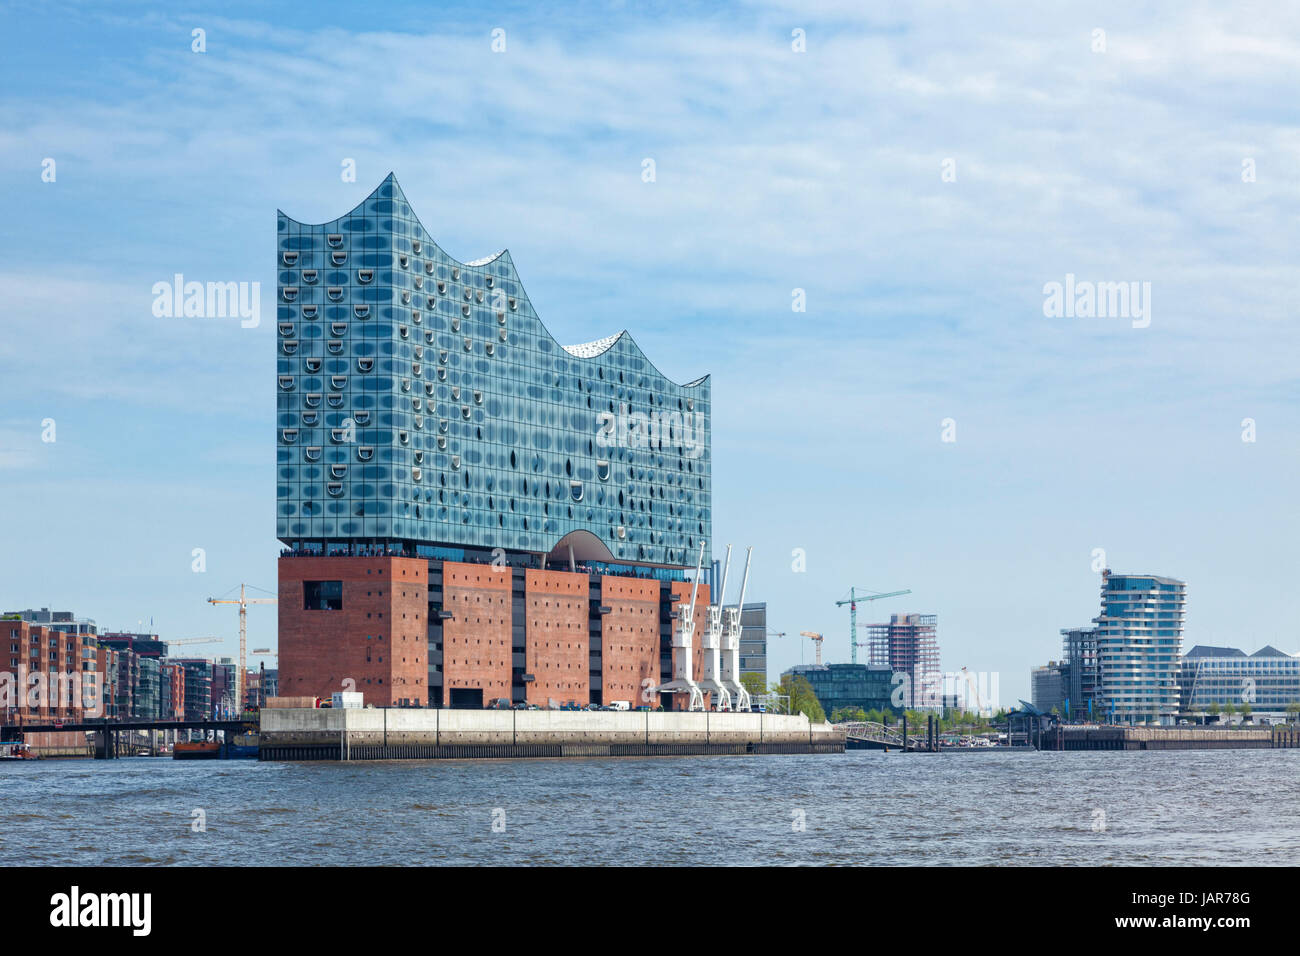 Hamburg, Deutschland - 17. Mai 2017: The Elbe Philharmonic Hall oder Elbphilharmonie, Konzertsaal am Hafen City Viertel von Hamburg Stockfoto